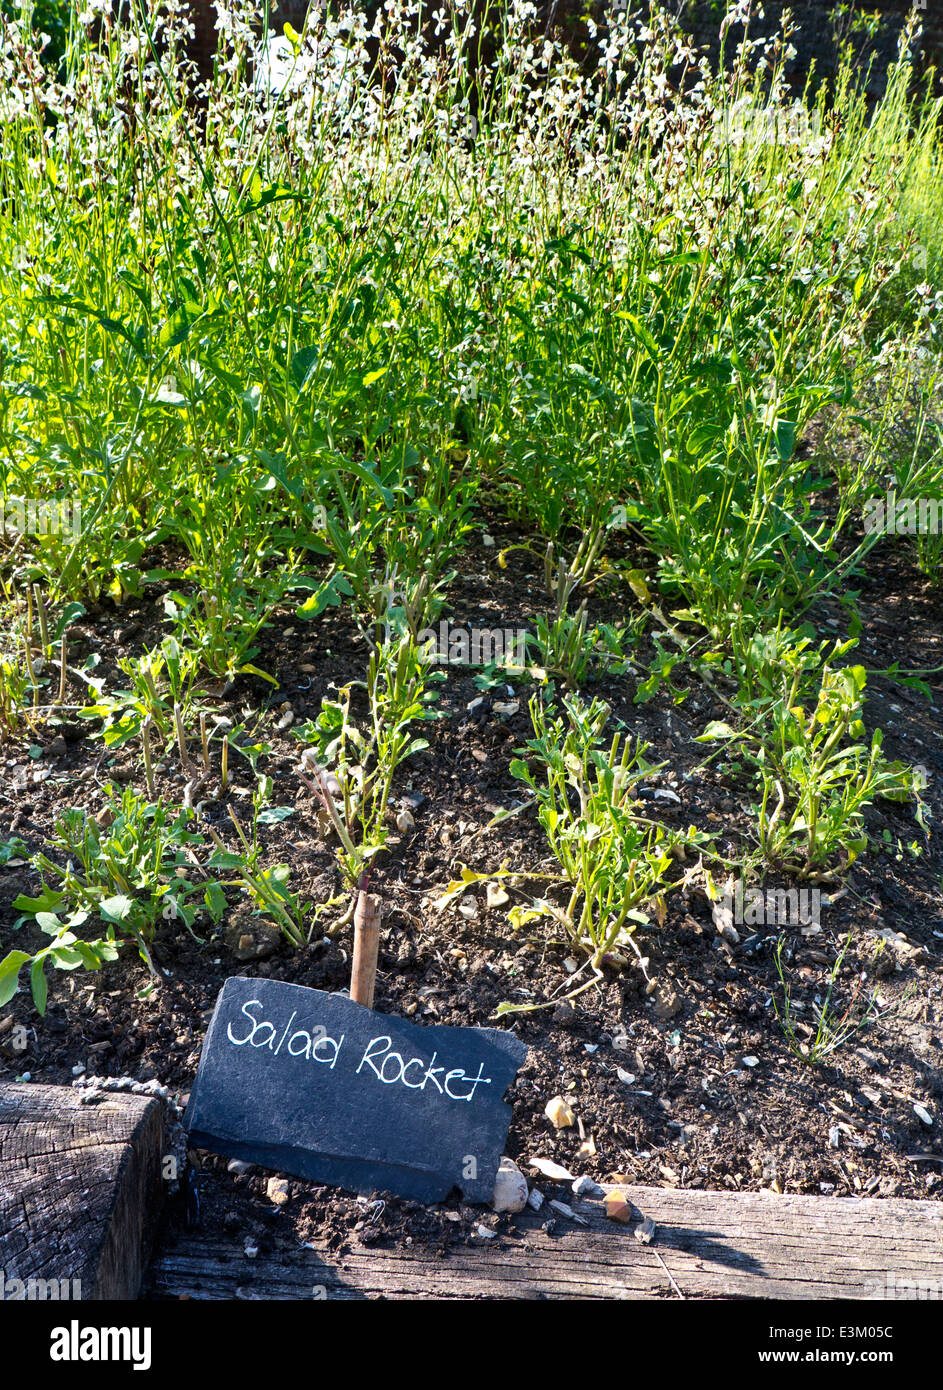 ROQUETTE À SALADE Eruca sativa une plante annuelle comestible, connue sous le nom de roquette À salade poussant dans un potager avec étiquette de nom d'ardoise rustique à l'avant Banque D'Images